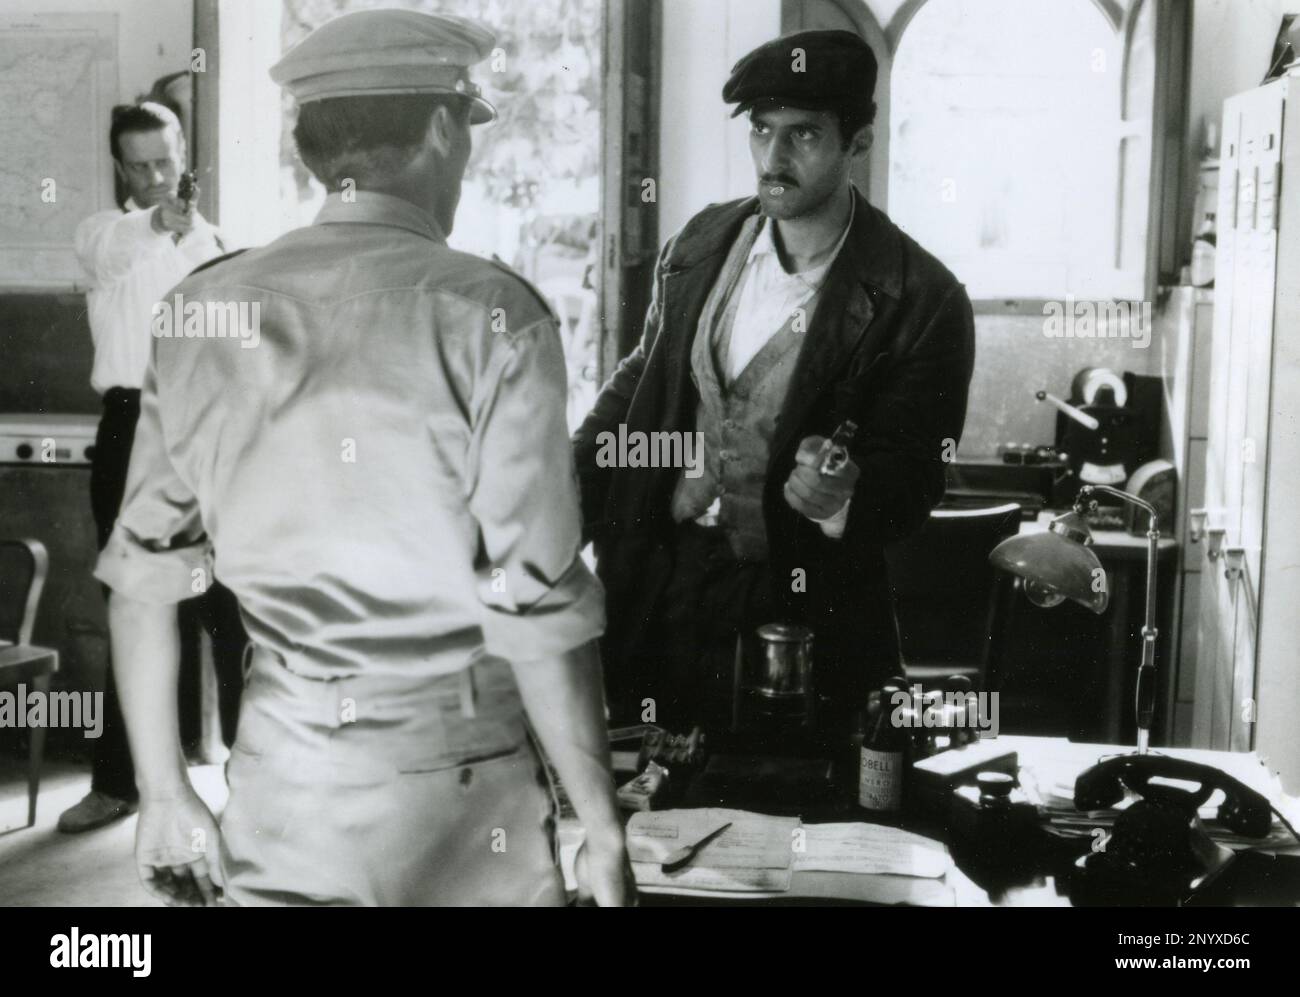 Acteurs John Turturro et Christopher Lambert dans le film le sicilien, USA 1987 Banque D'Images